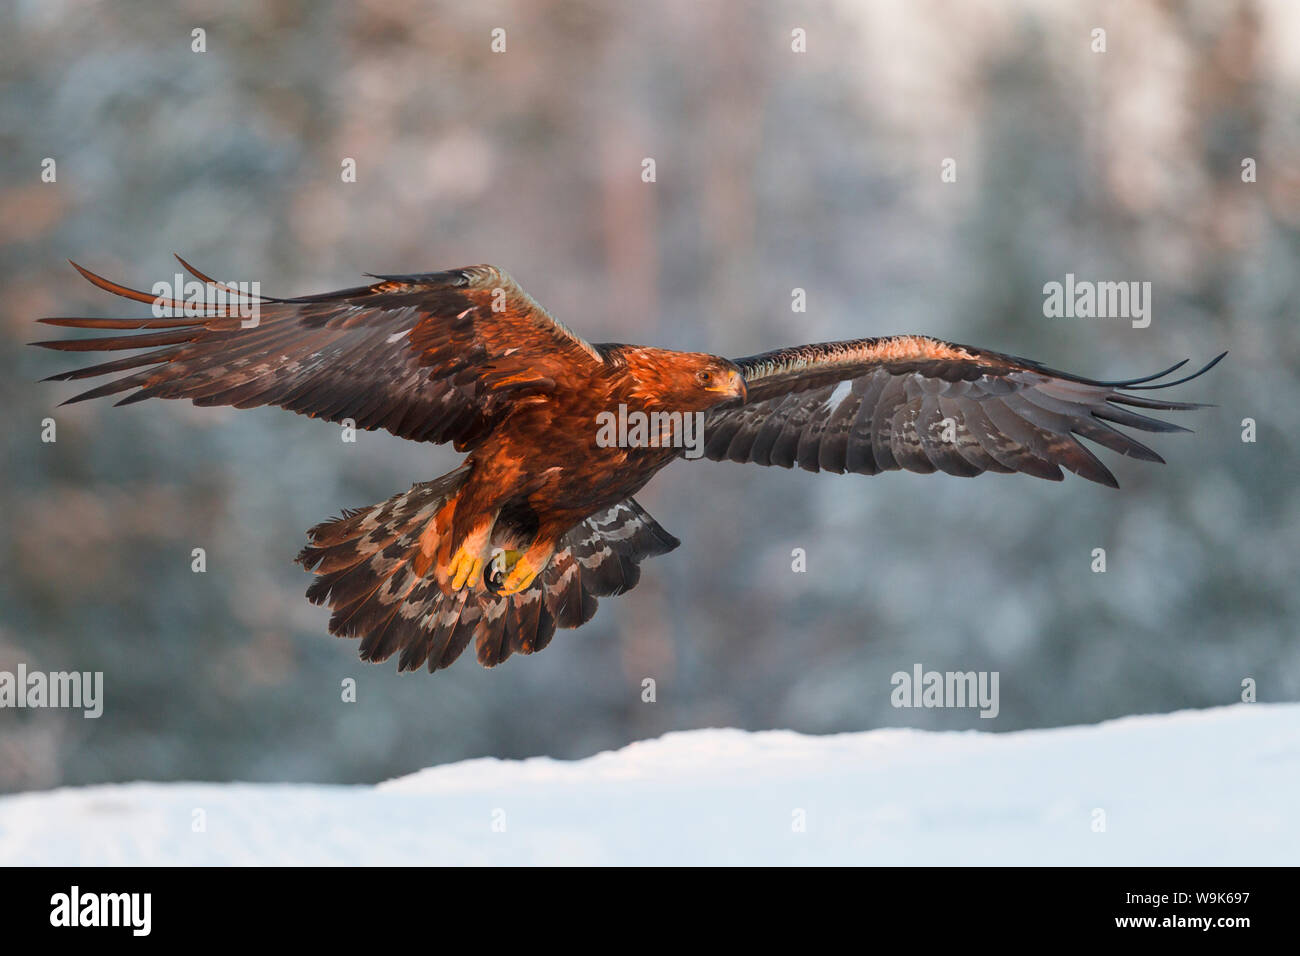 Águila real (Aquila chrysaetos) toma vuelo en golden tarde luz de invierno por encima de la nieve, el Bosque de Taiga, Finlandia, Escandinavia, Europa Foto de stock